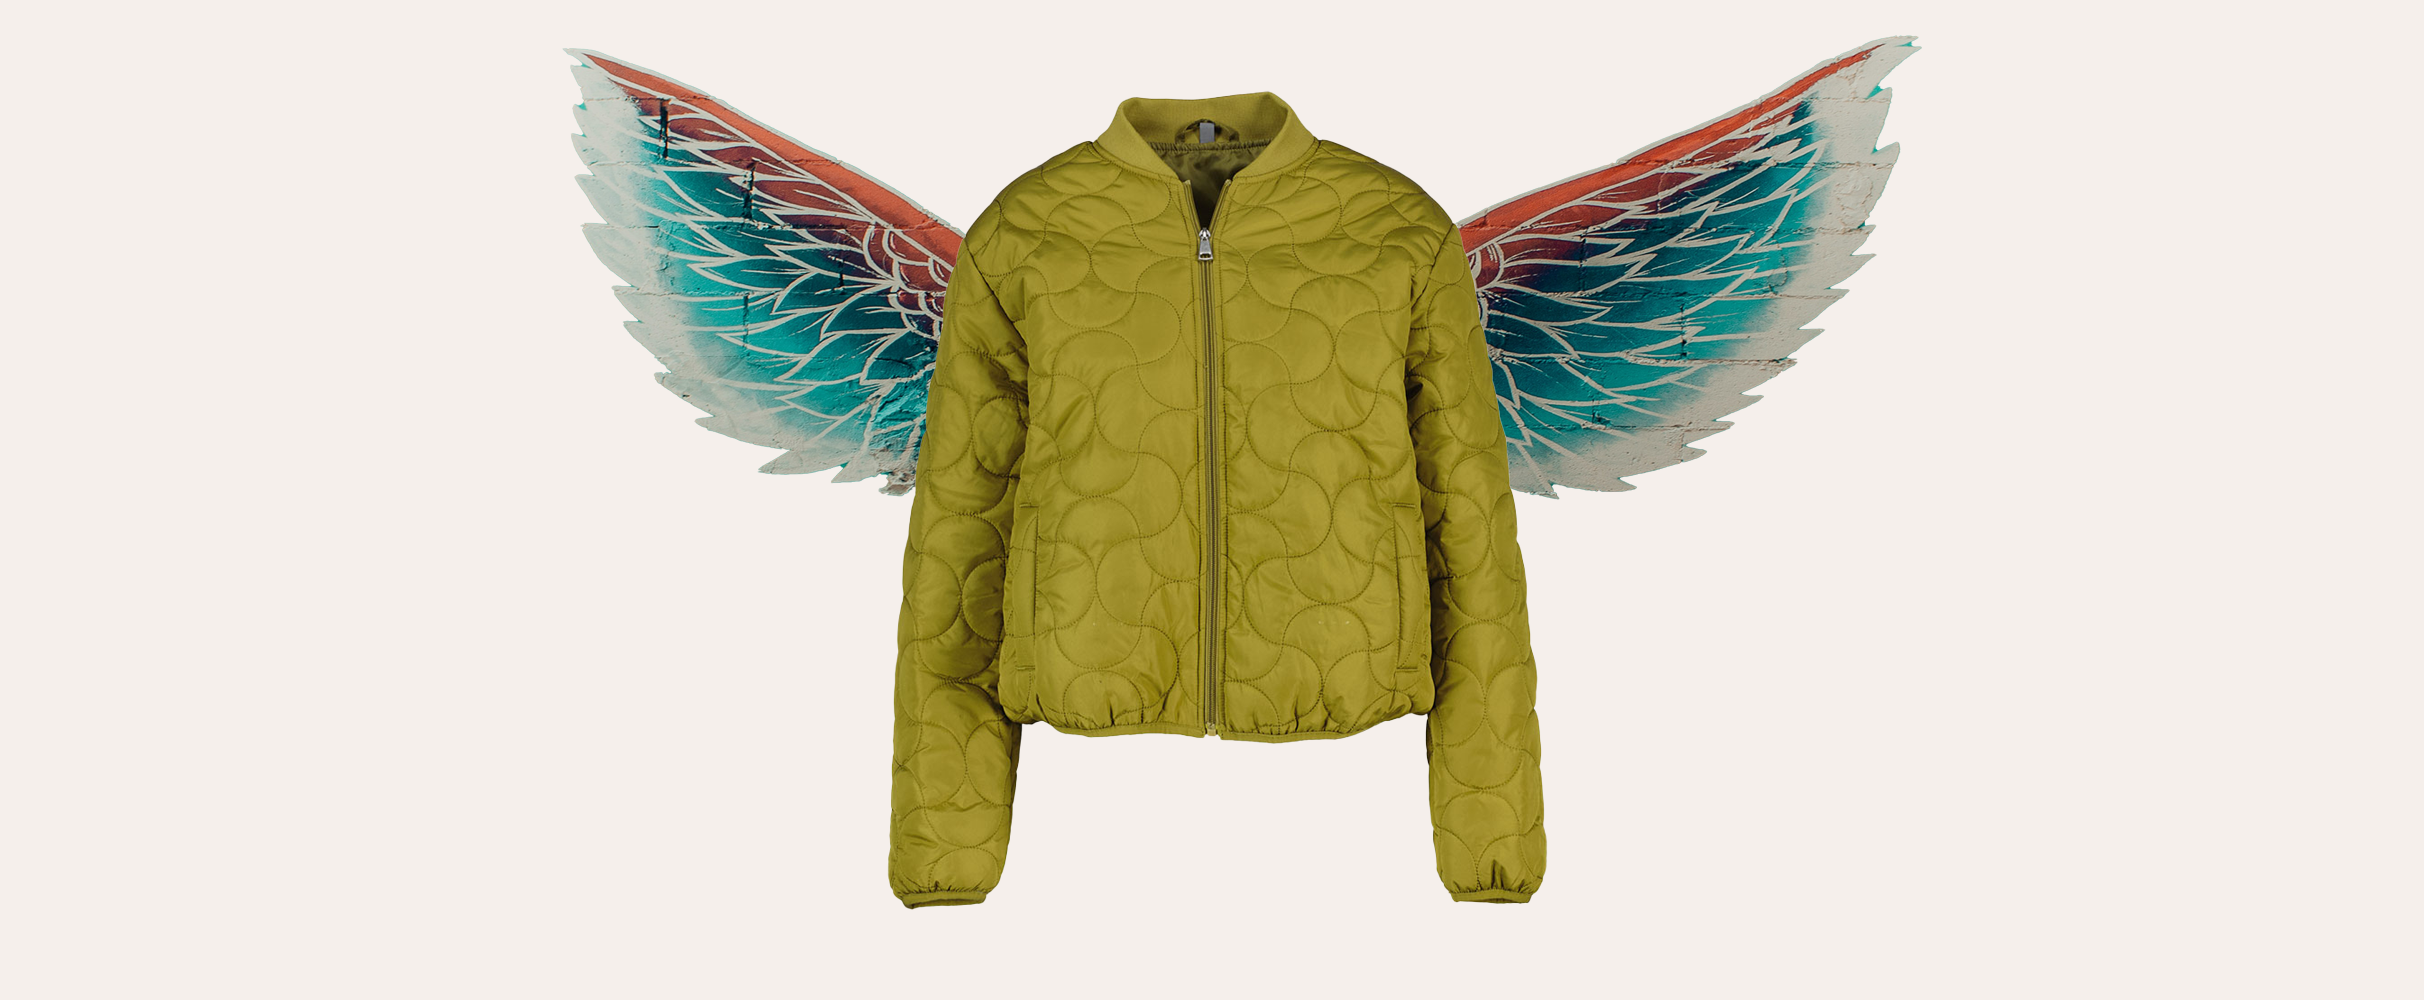 Vliegt de winkels uit: dit jasje van Zeeman is retepopulair én super goedkoop